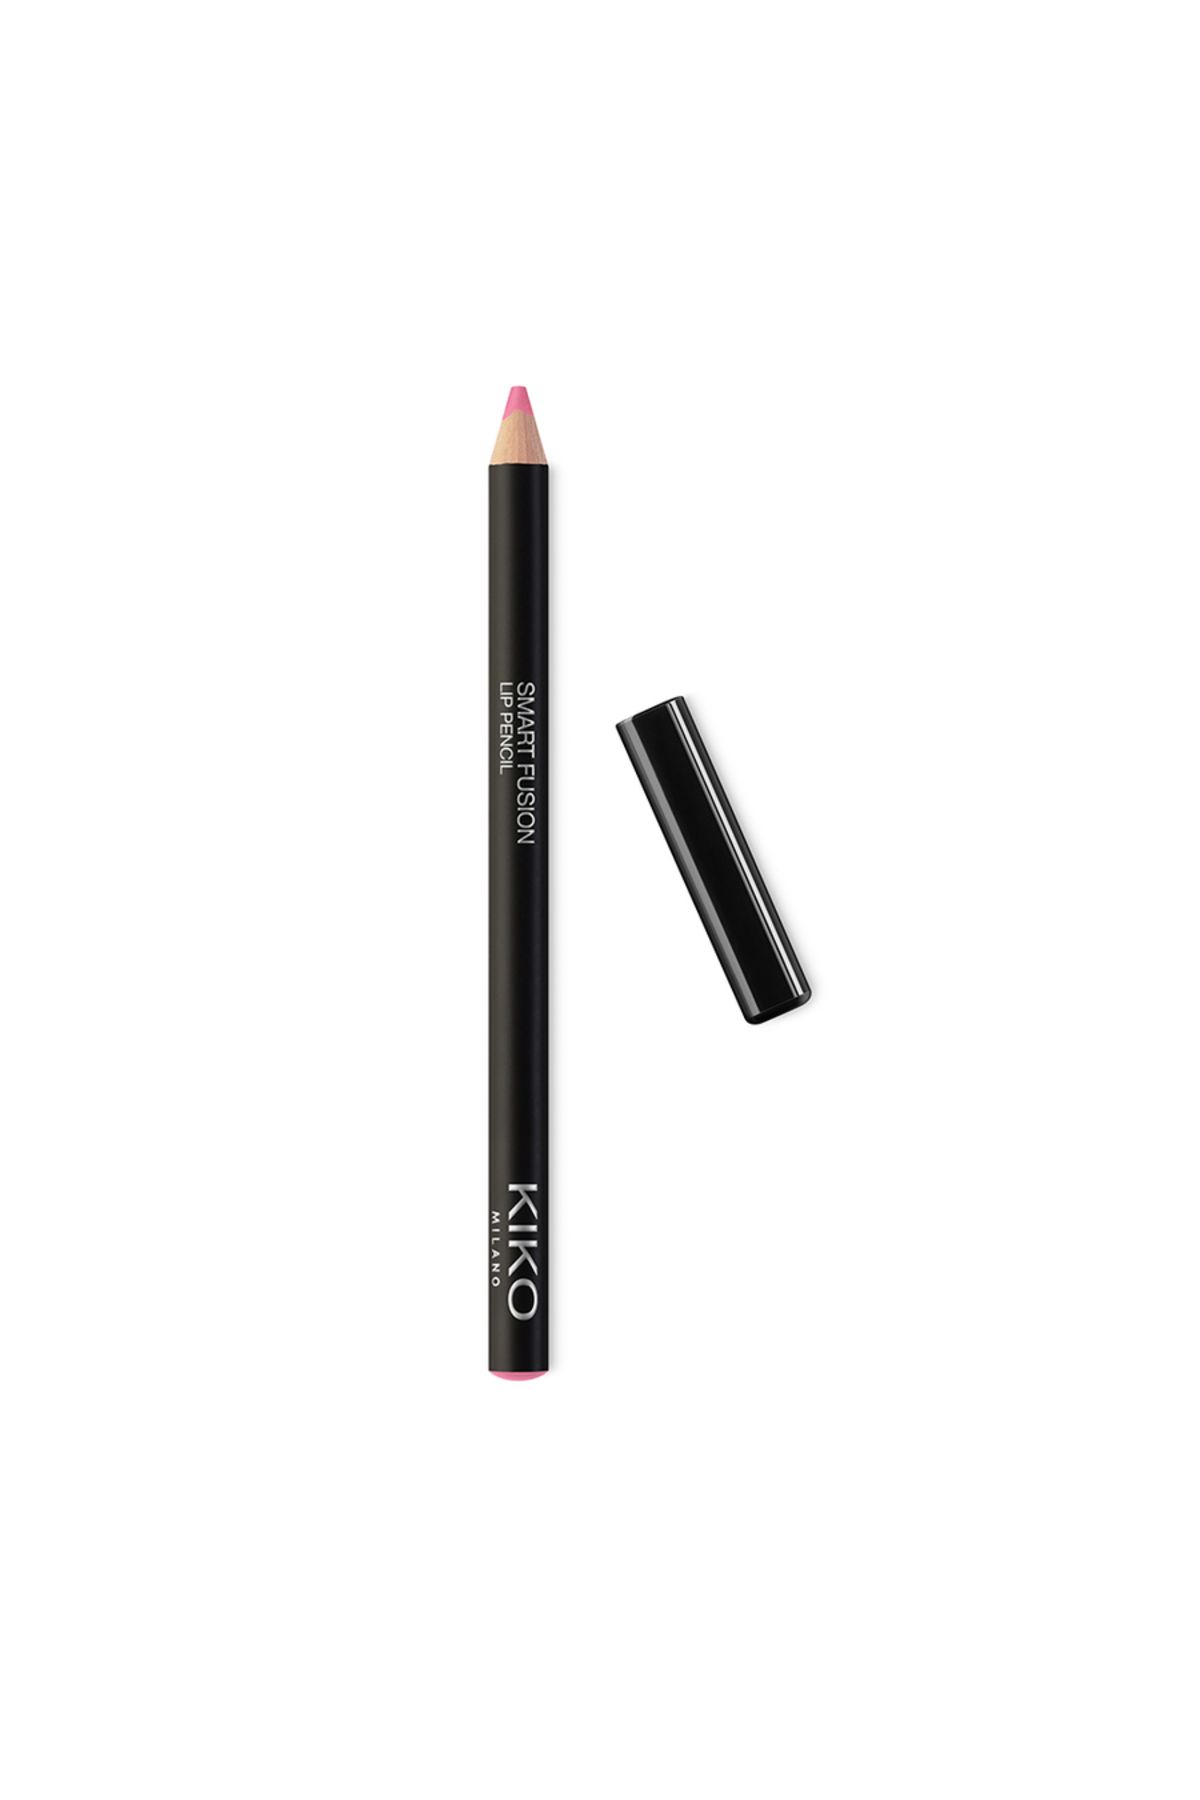 KIKO DUDAK KALEMİ - Smart Fusion Lip Pencil - 520 Light Rosy Mauve